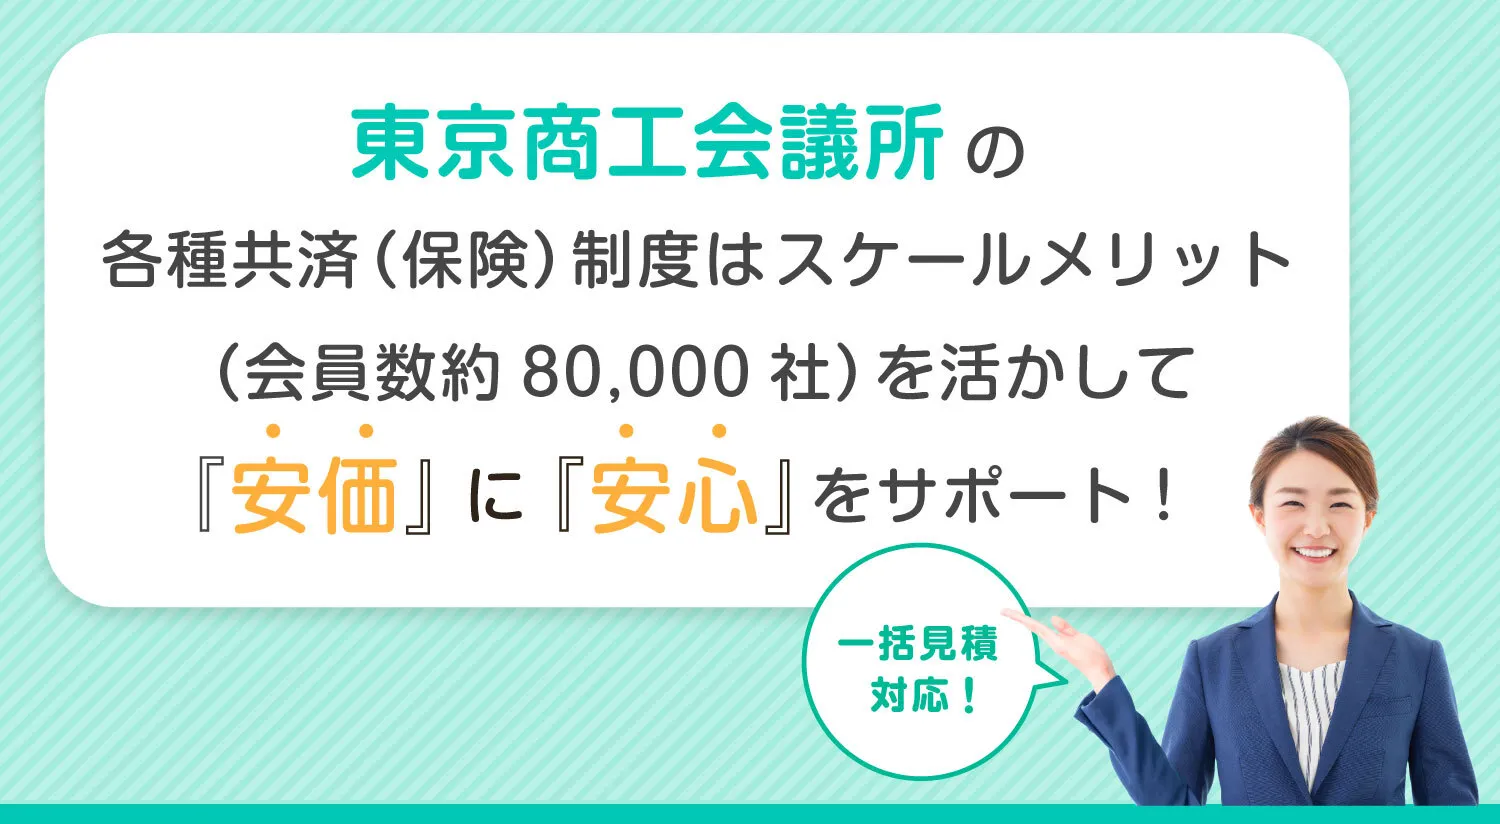 東京商工会議所の各種共済（保険）制度はスケールメリット（会員数約80,000社）を活かして『安価』に『安心』をサポート！